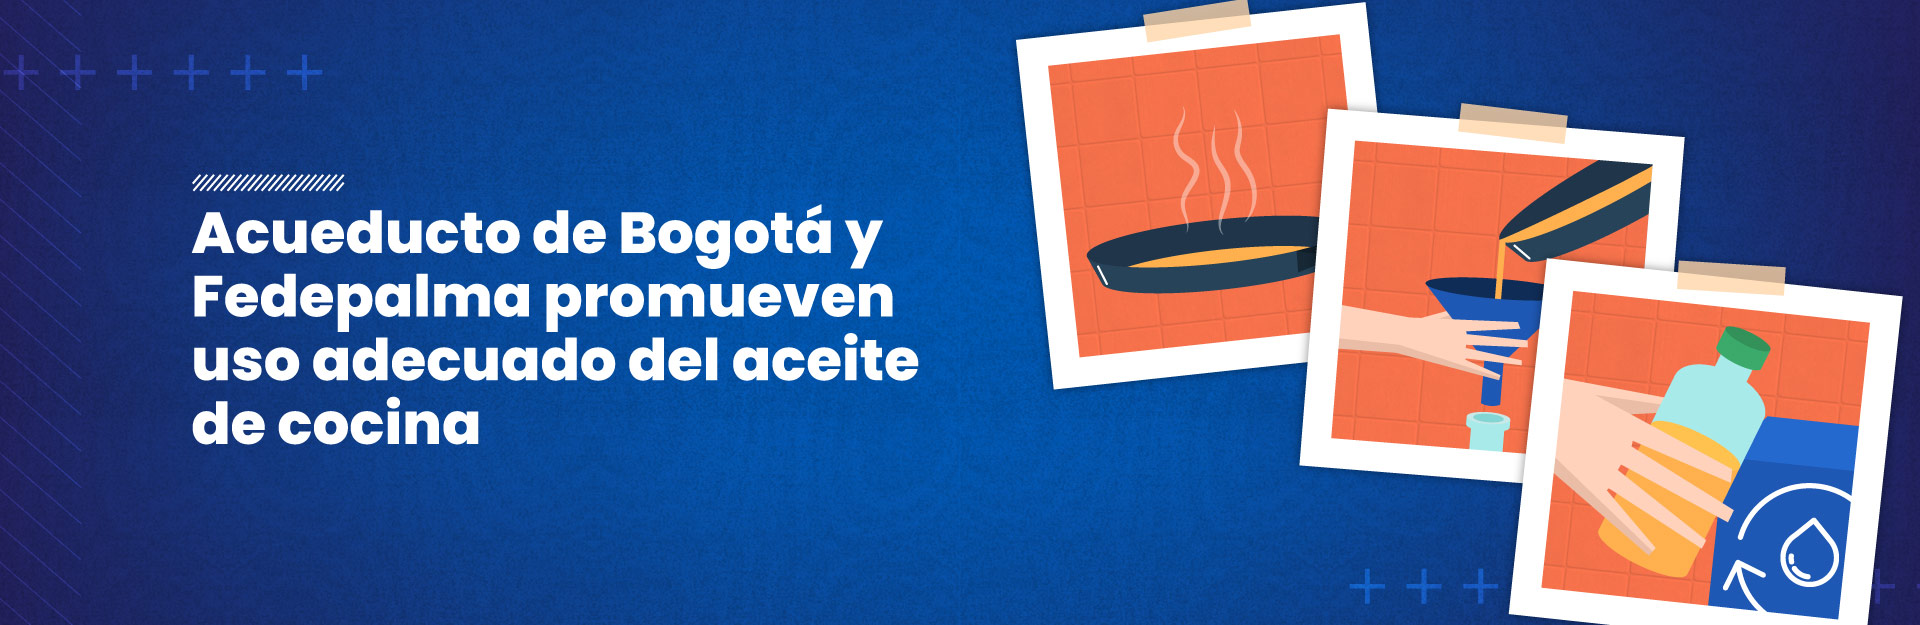 Acueducto de Bogotá y Fedepalma promueven uso adecuado del aceite de cocina